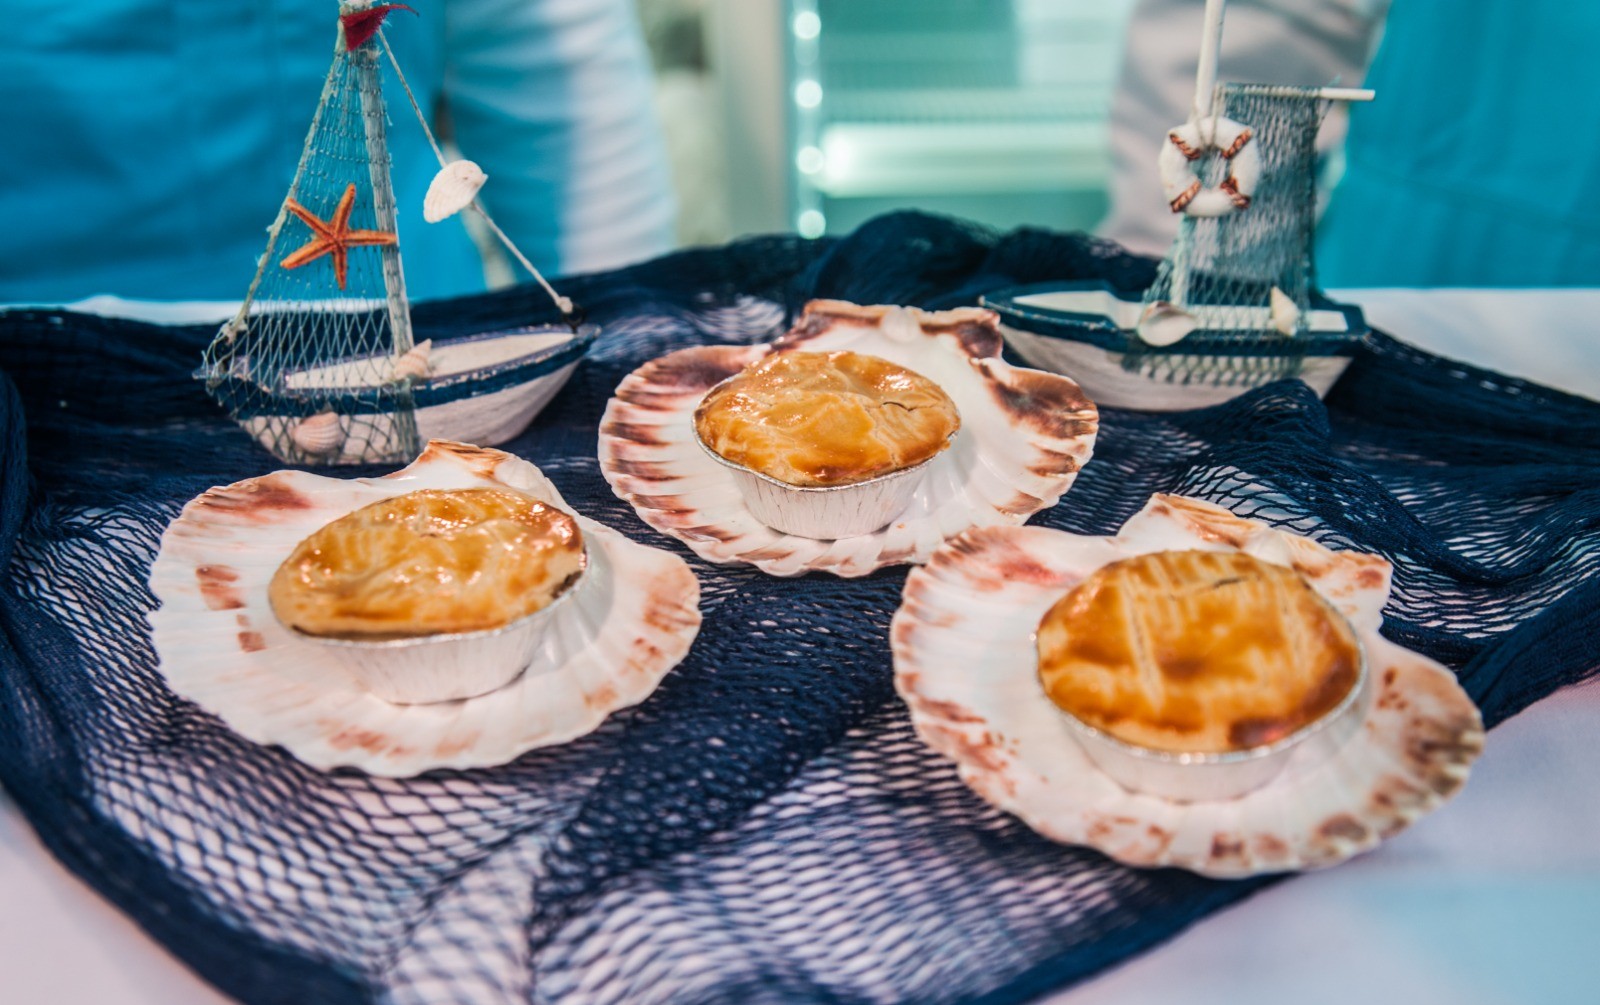 Petiscos Olímpicos: Empada do Mar com recheio de camarão combina sabor e memória afetiva de chef